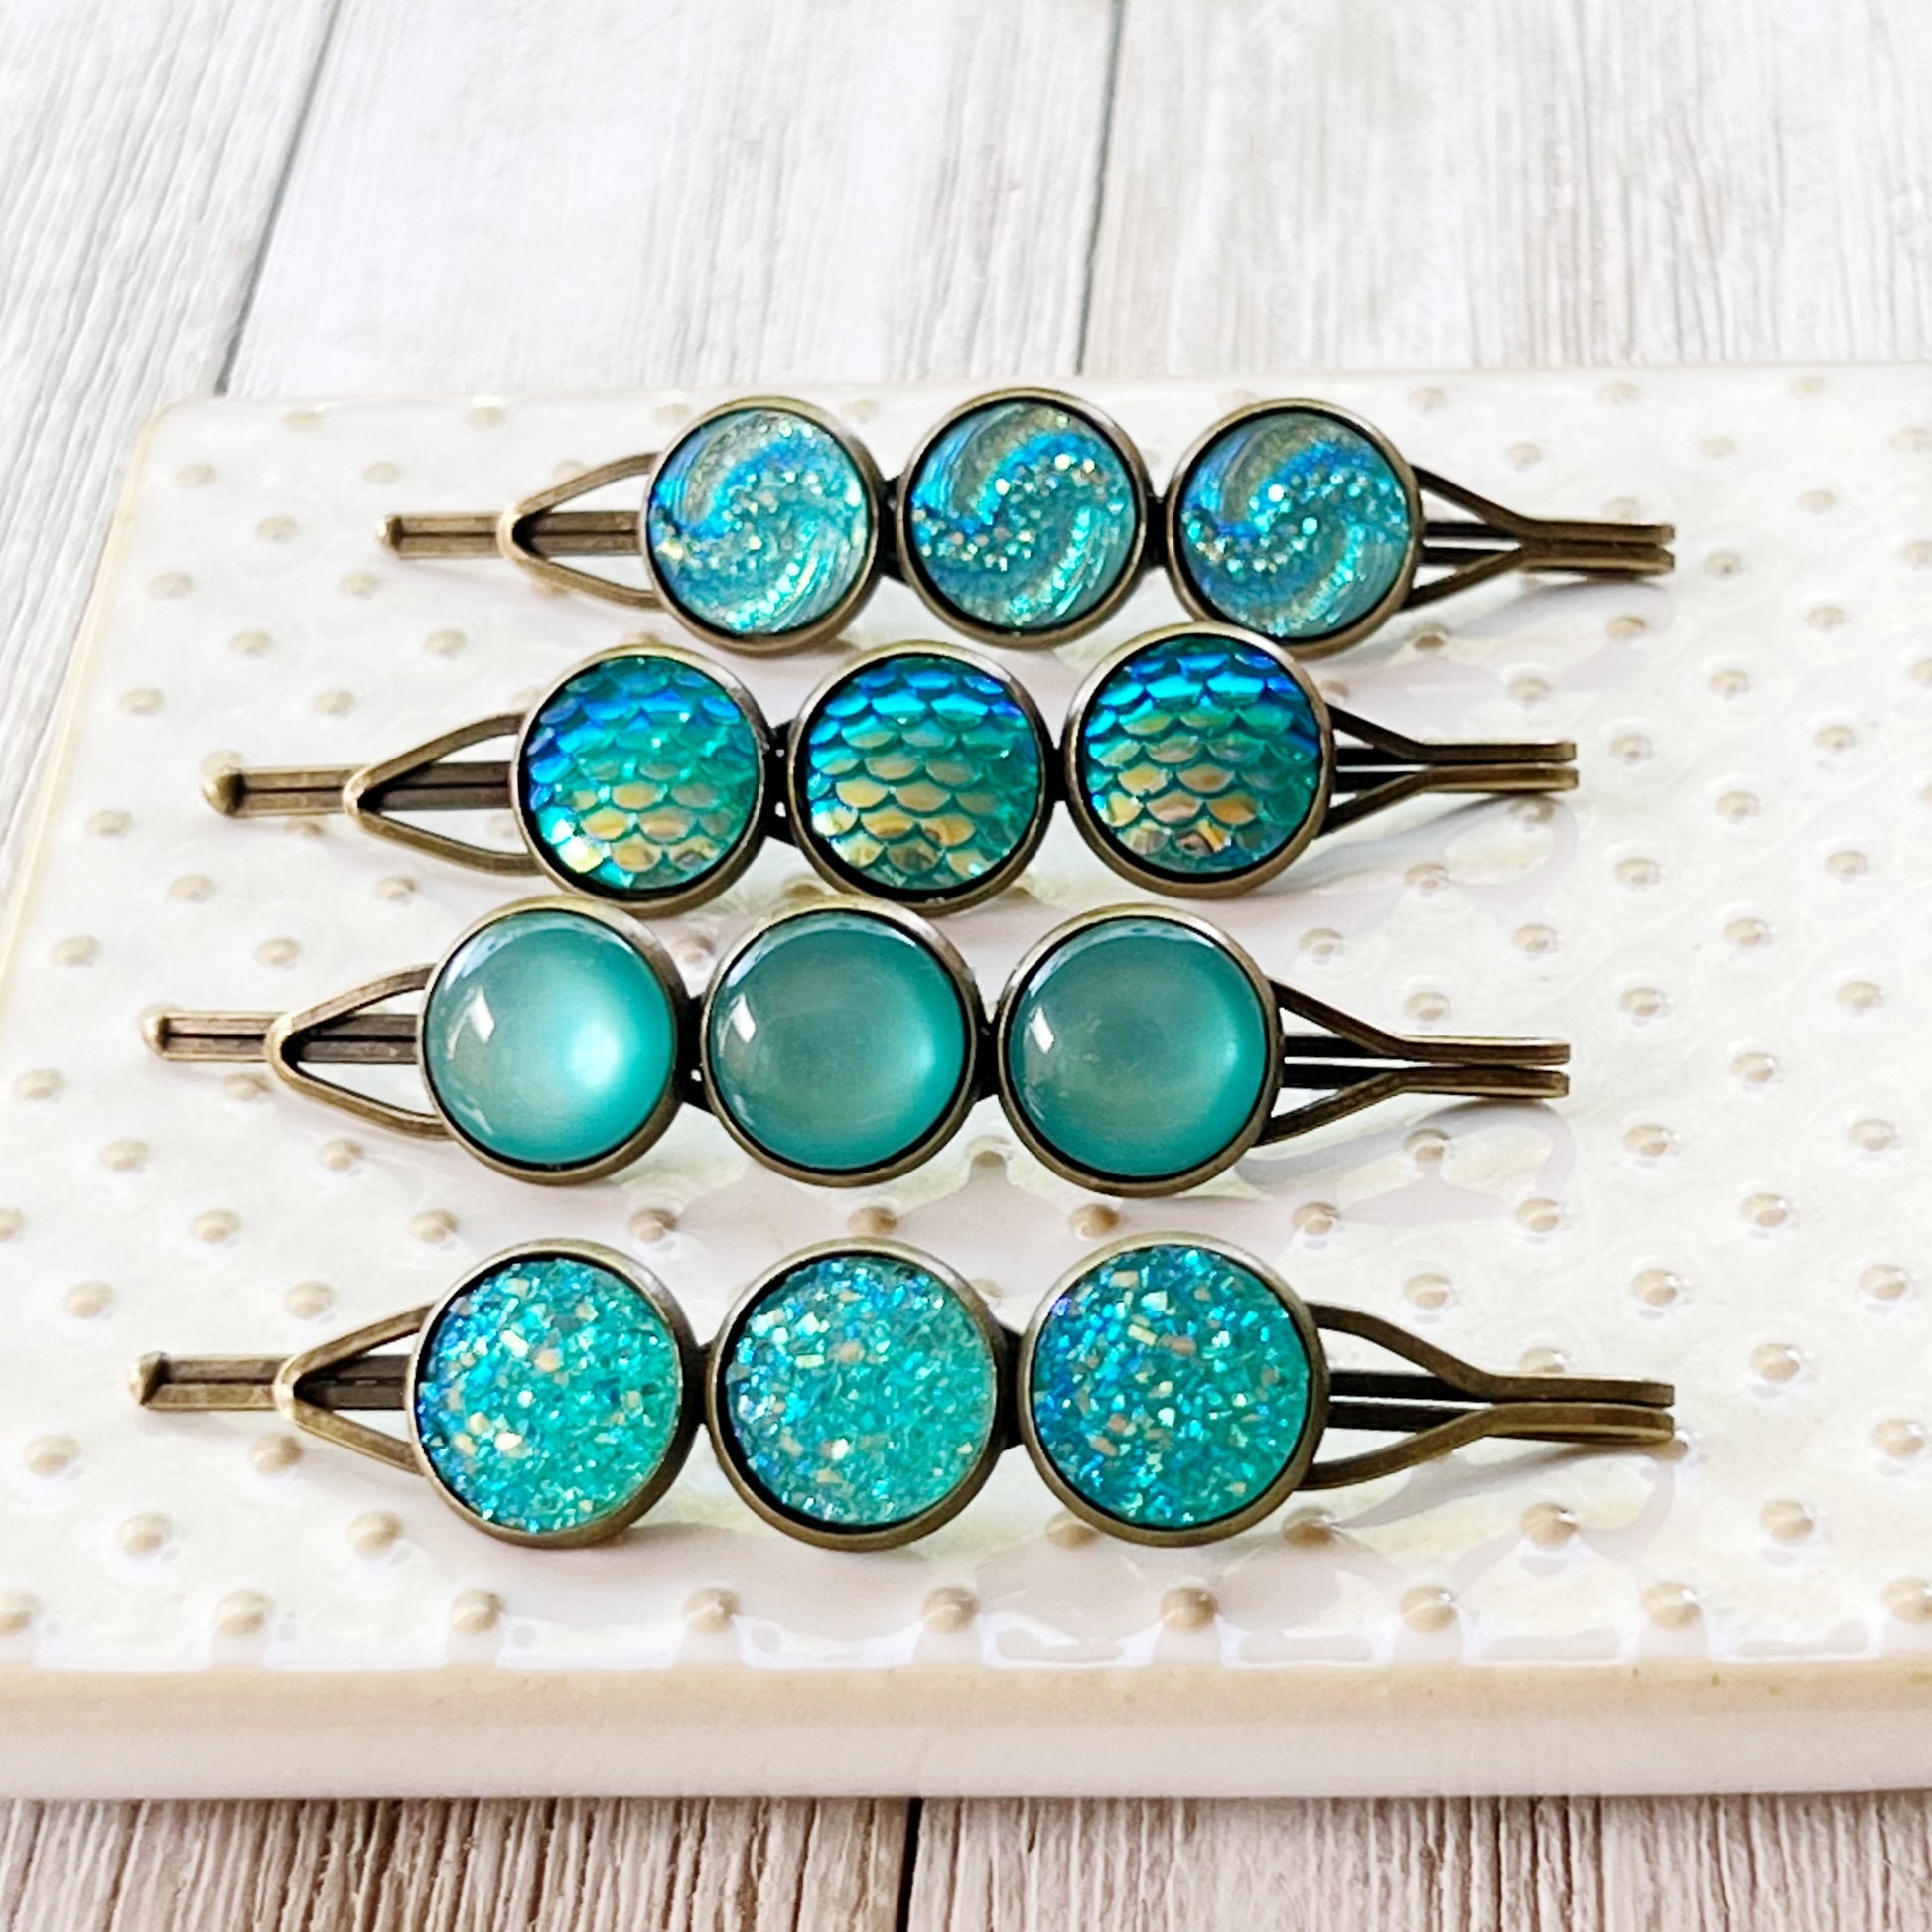 Blue Green Druzy Hair Pins - Stylish Women's Hair Accessories Hair Clips & Bobby Pins